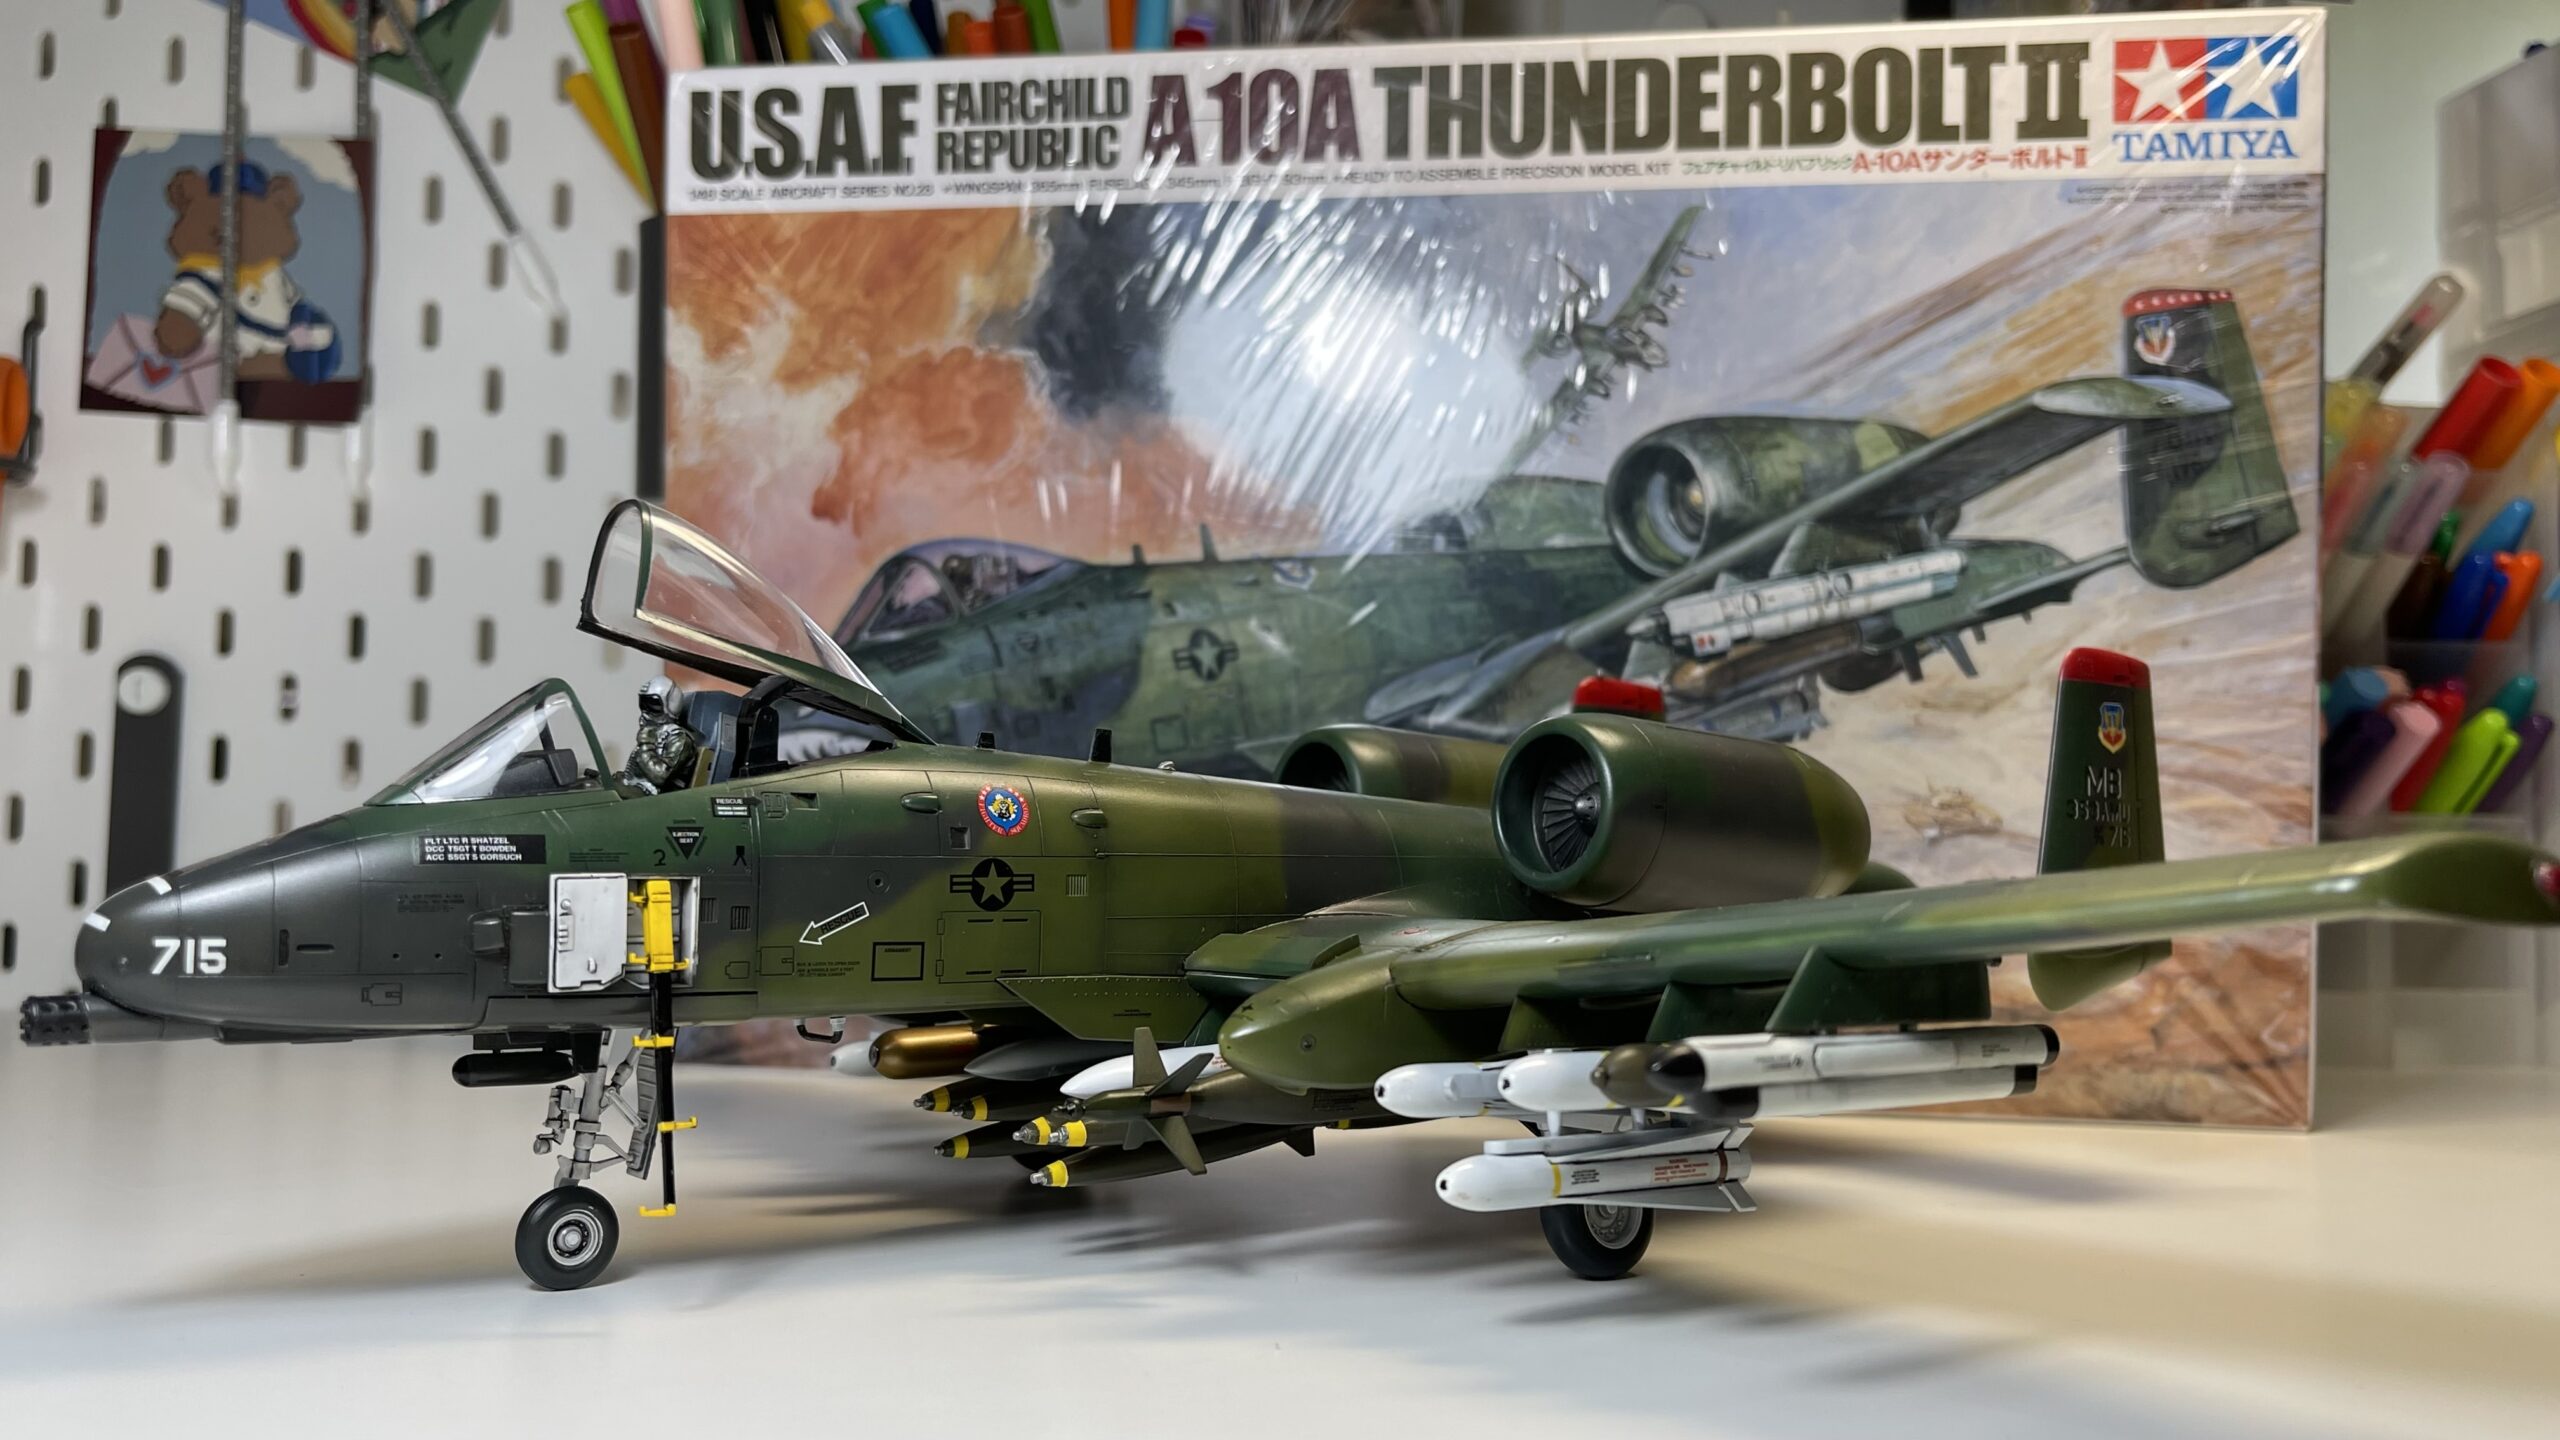 [ShowOff] A-10A Thunderbolt II TAMIYA 1/48 โดย BOY